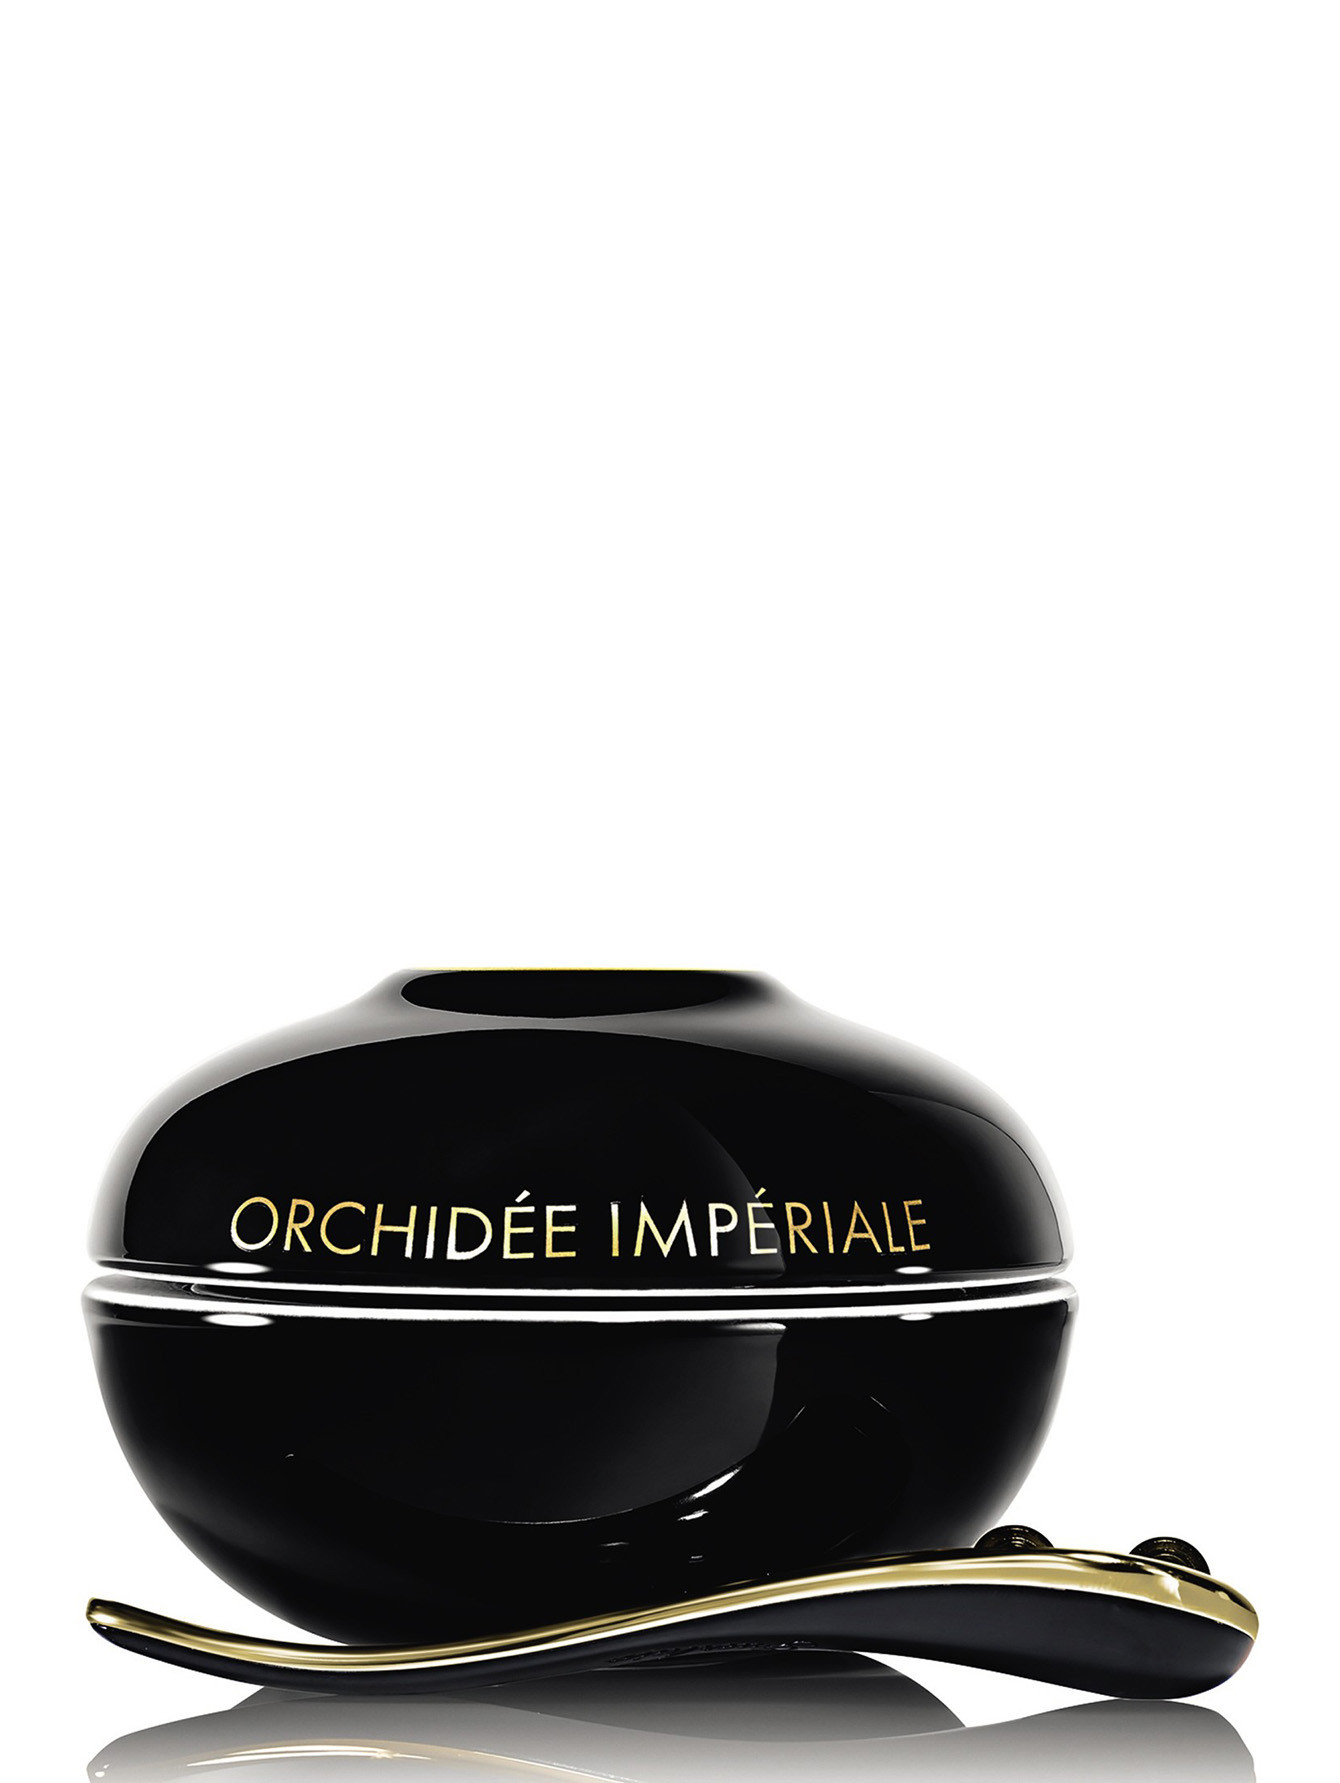 Уникальное средство ухода за кожей - крем для лица ORCHIDEE IMPERIALE BLACK, 50 мл - Общий вид